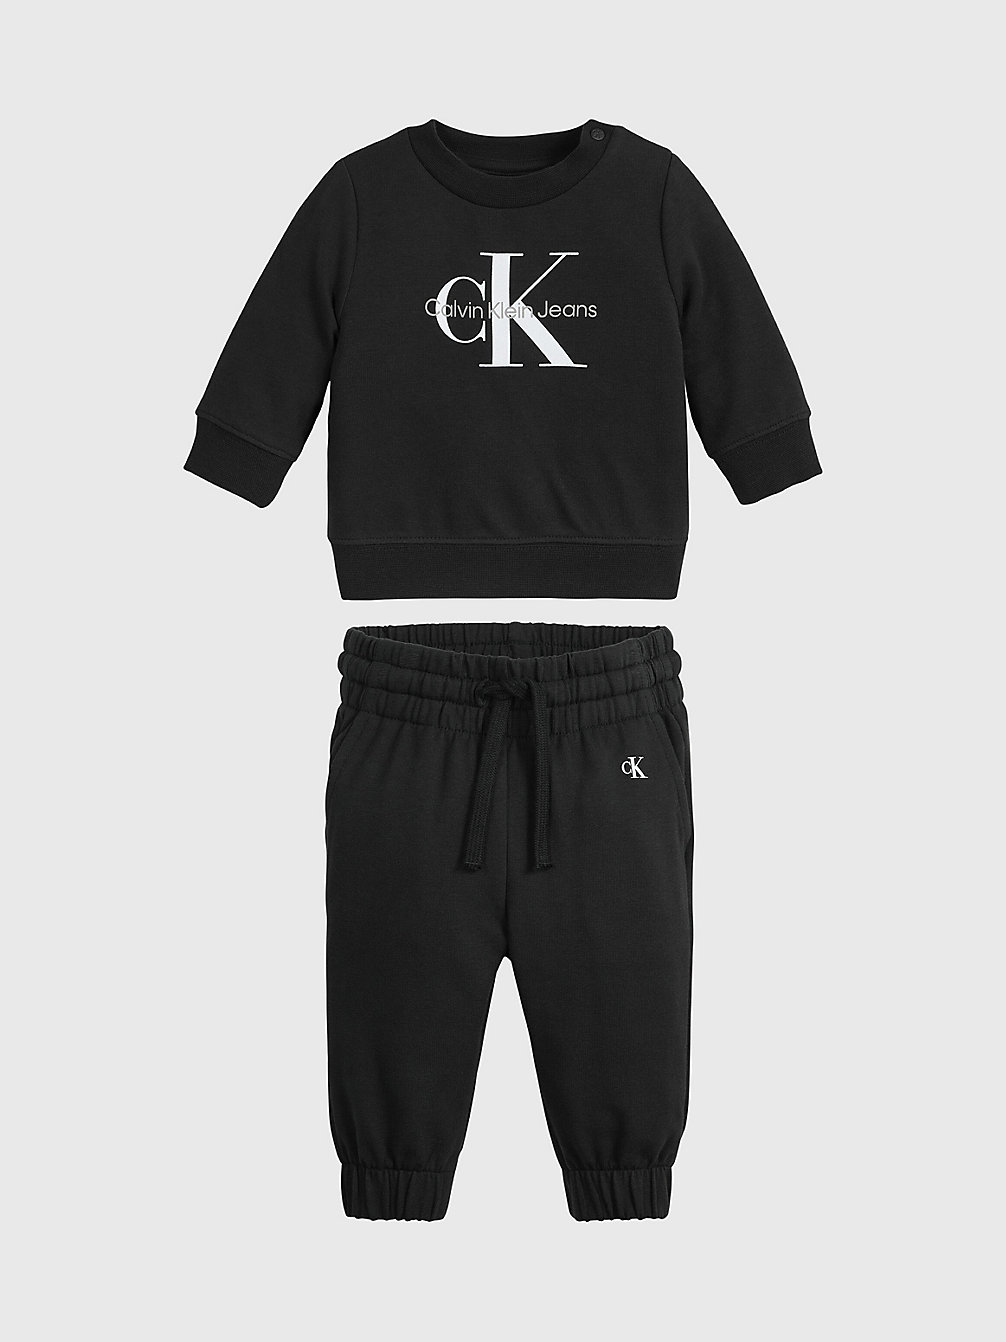 CK BLACK Newborn Trainingspak Met Logo undefined newborn Calvin Klein